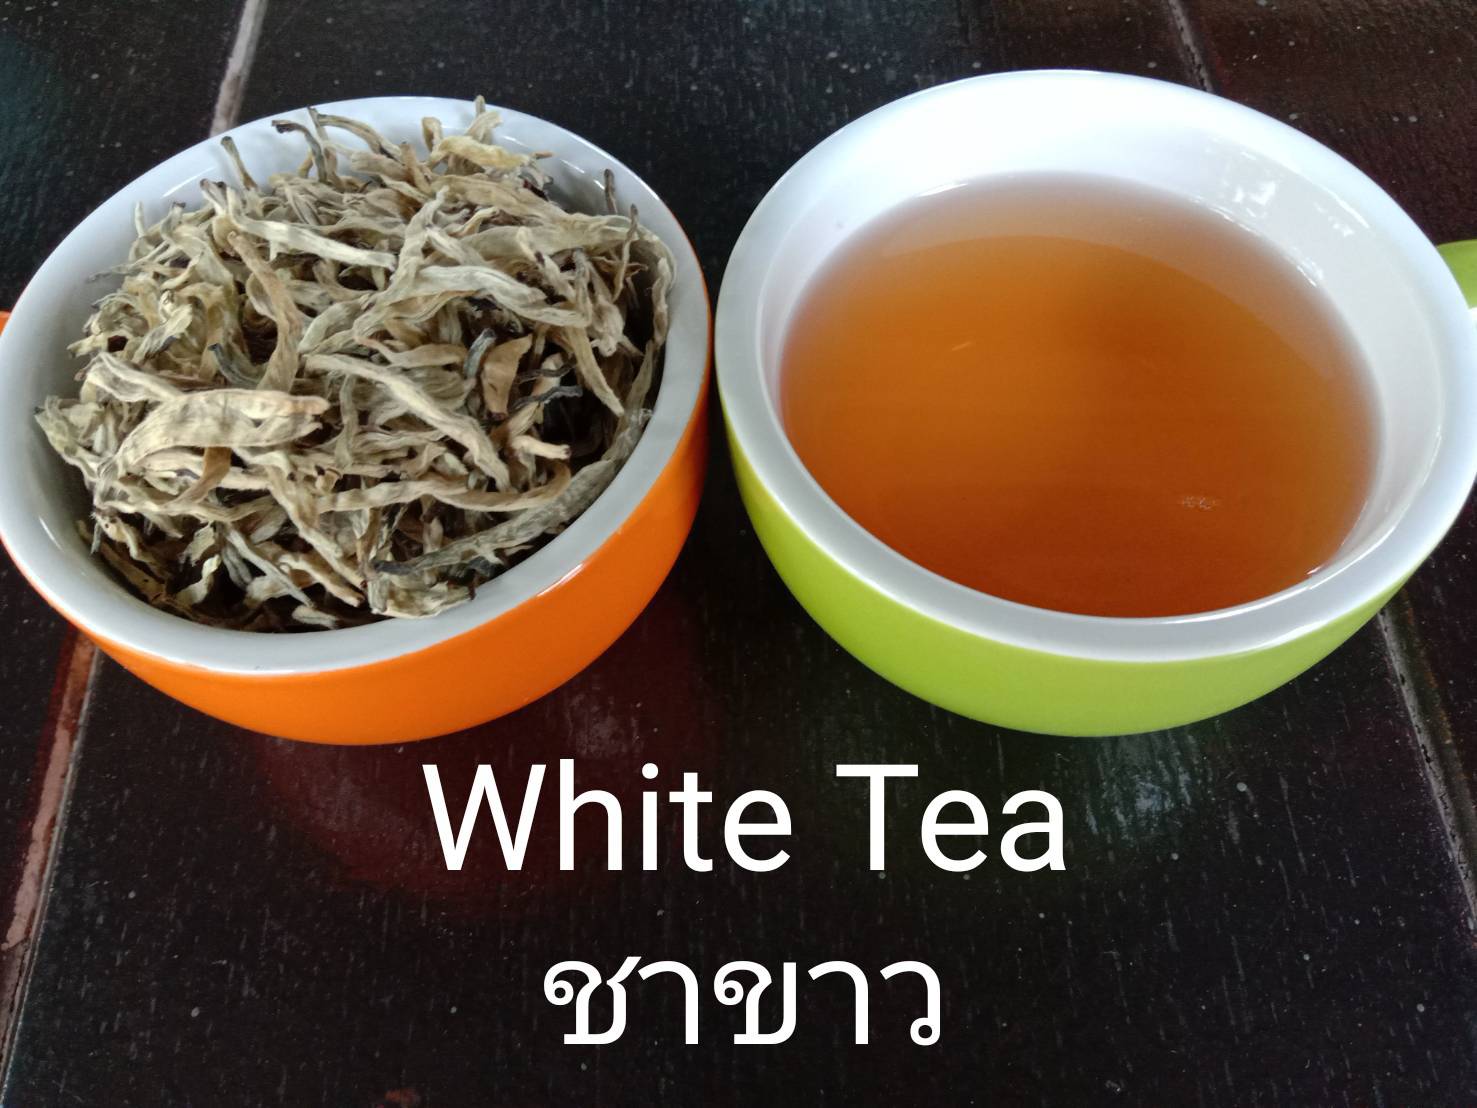 ชาขาวอัสสัม ออร์แกนิค (ตราดอยปู่หมื่น) 1 กก. Organic assam white tea (Doi Pumuen Brand) 1 kg.